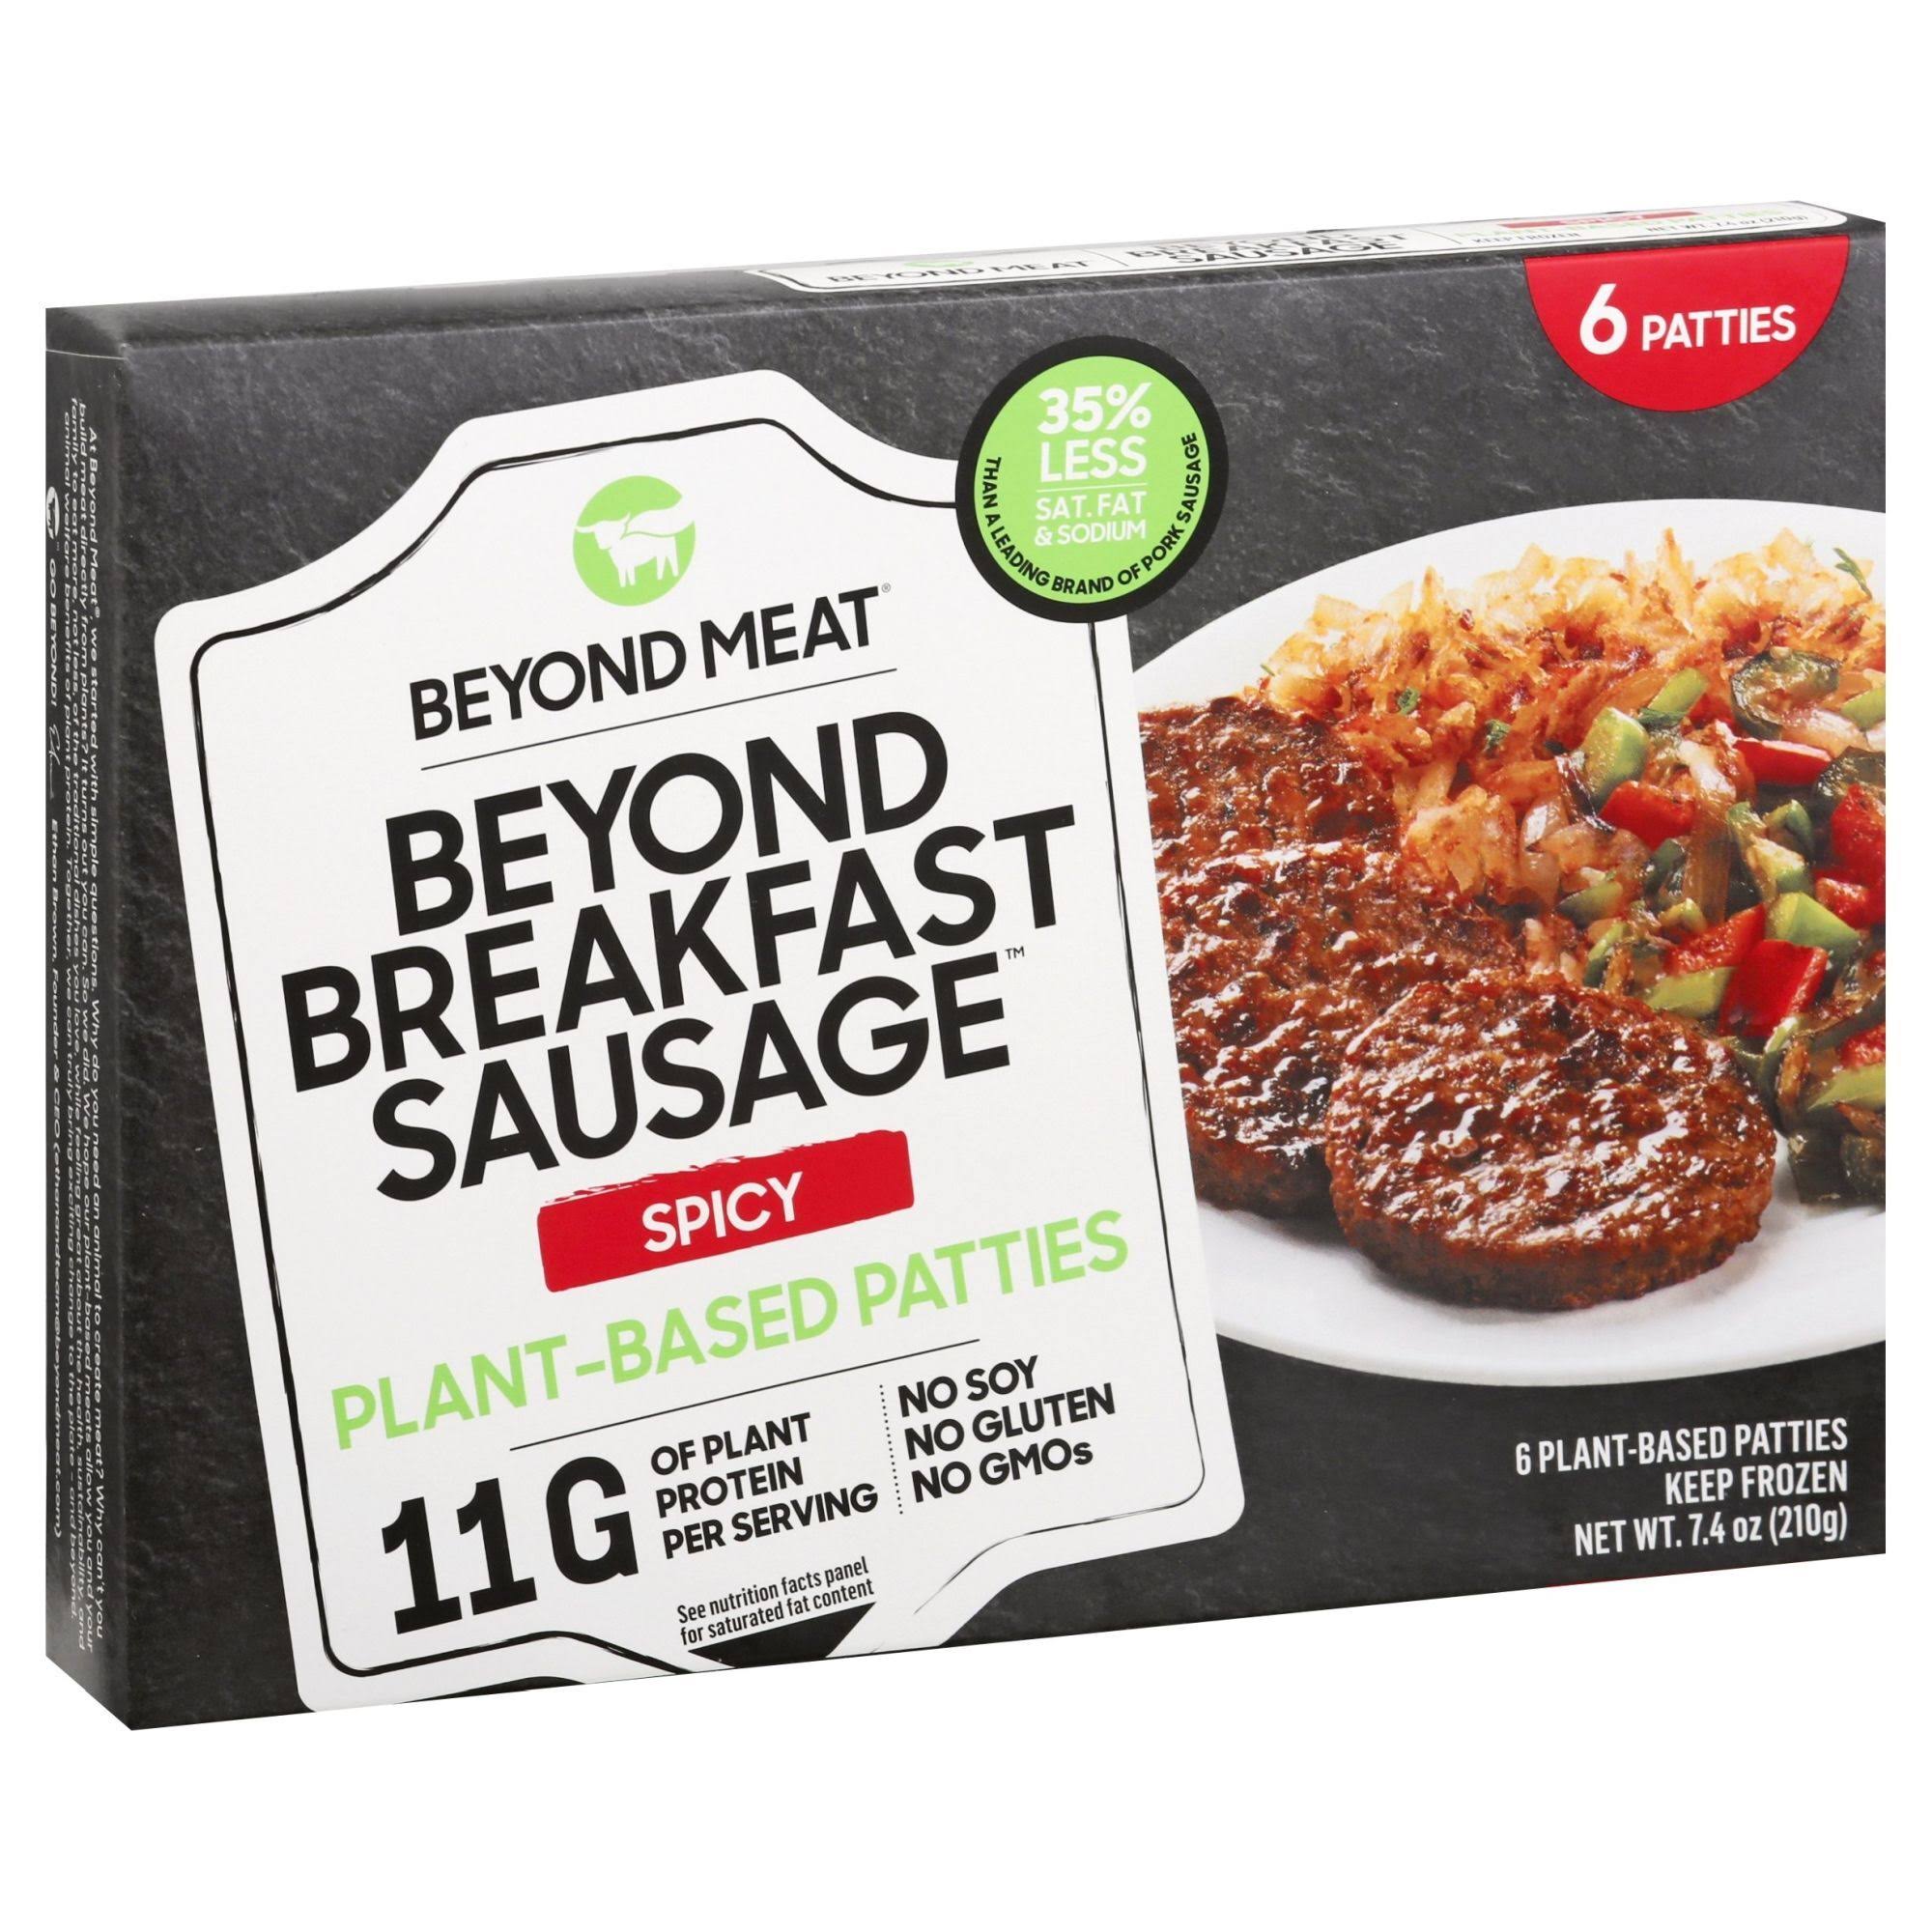 Beyond Meat Beyond Breakfast Sausage Patties, Plant-Based, Spicy - 6 patties, 7.4 oz